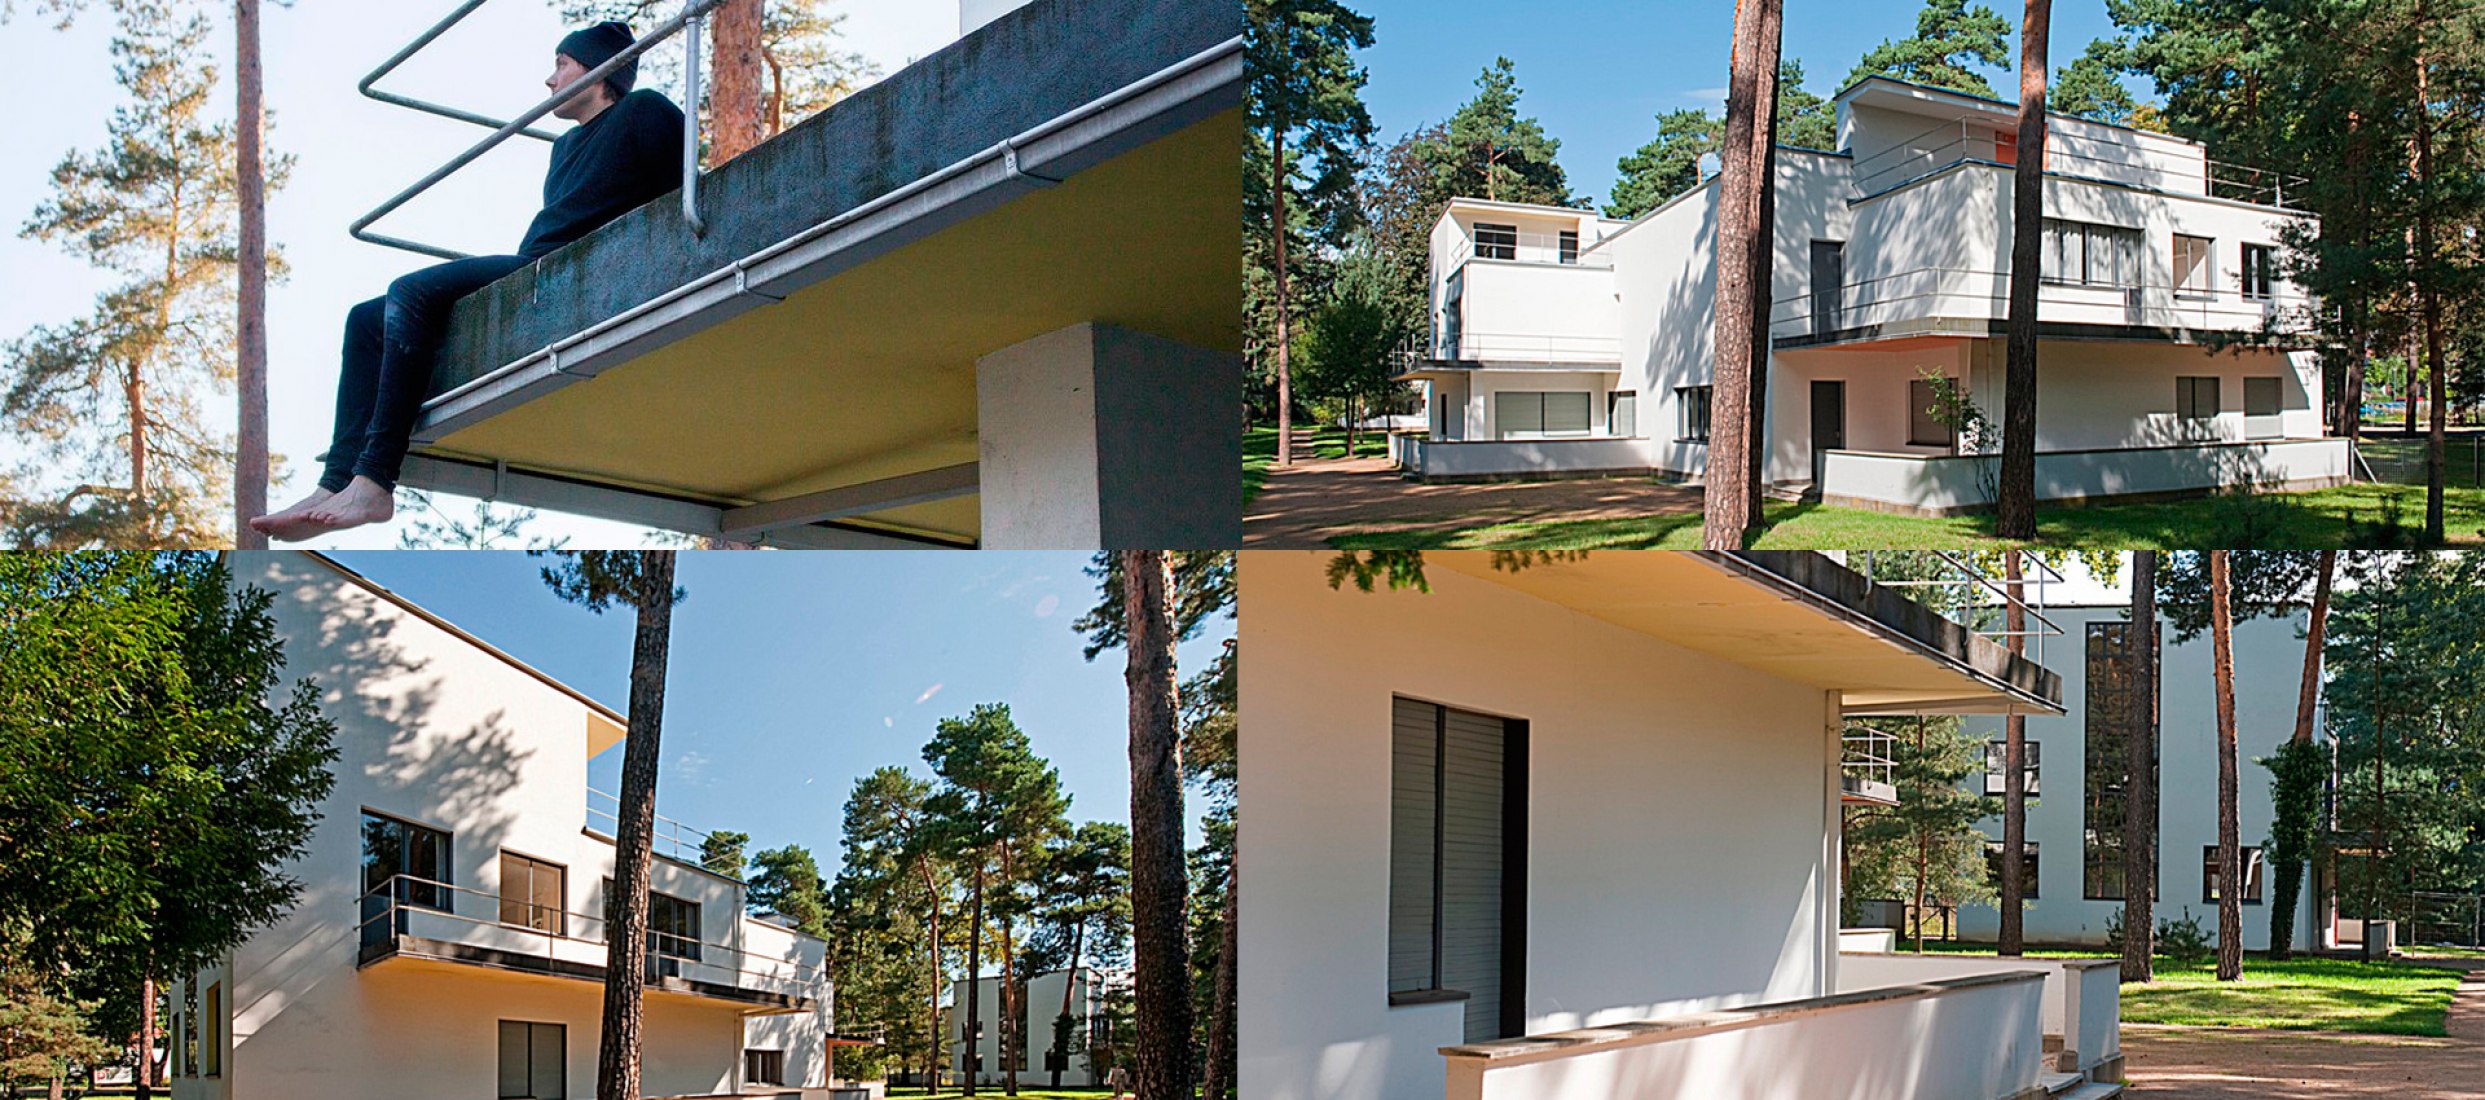 Abierta la convocatoria para vivir y trabajar en la Residencia Bauhaus